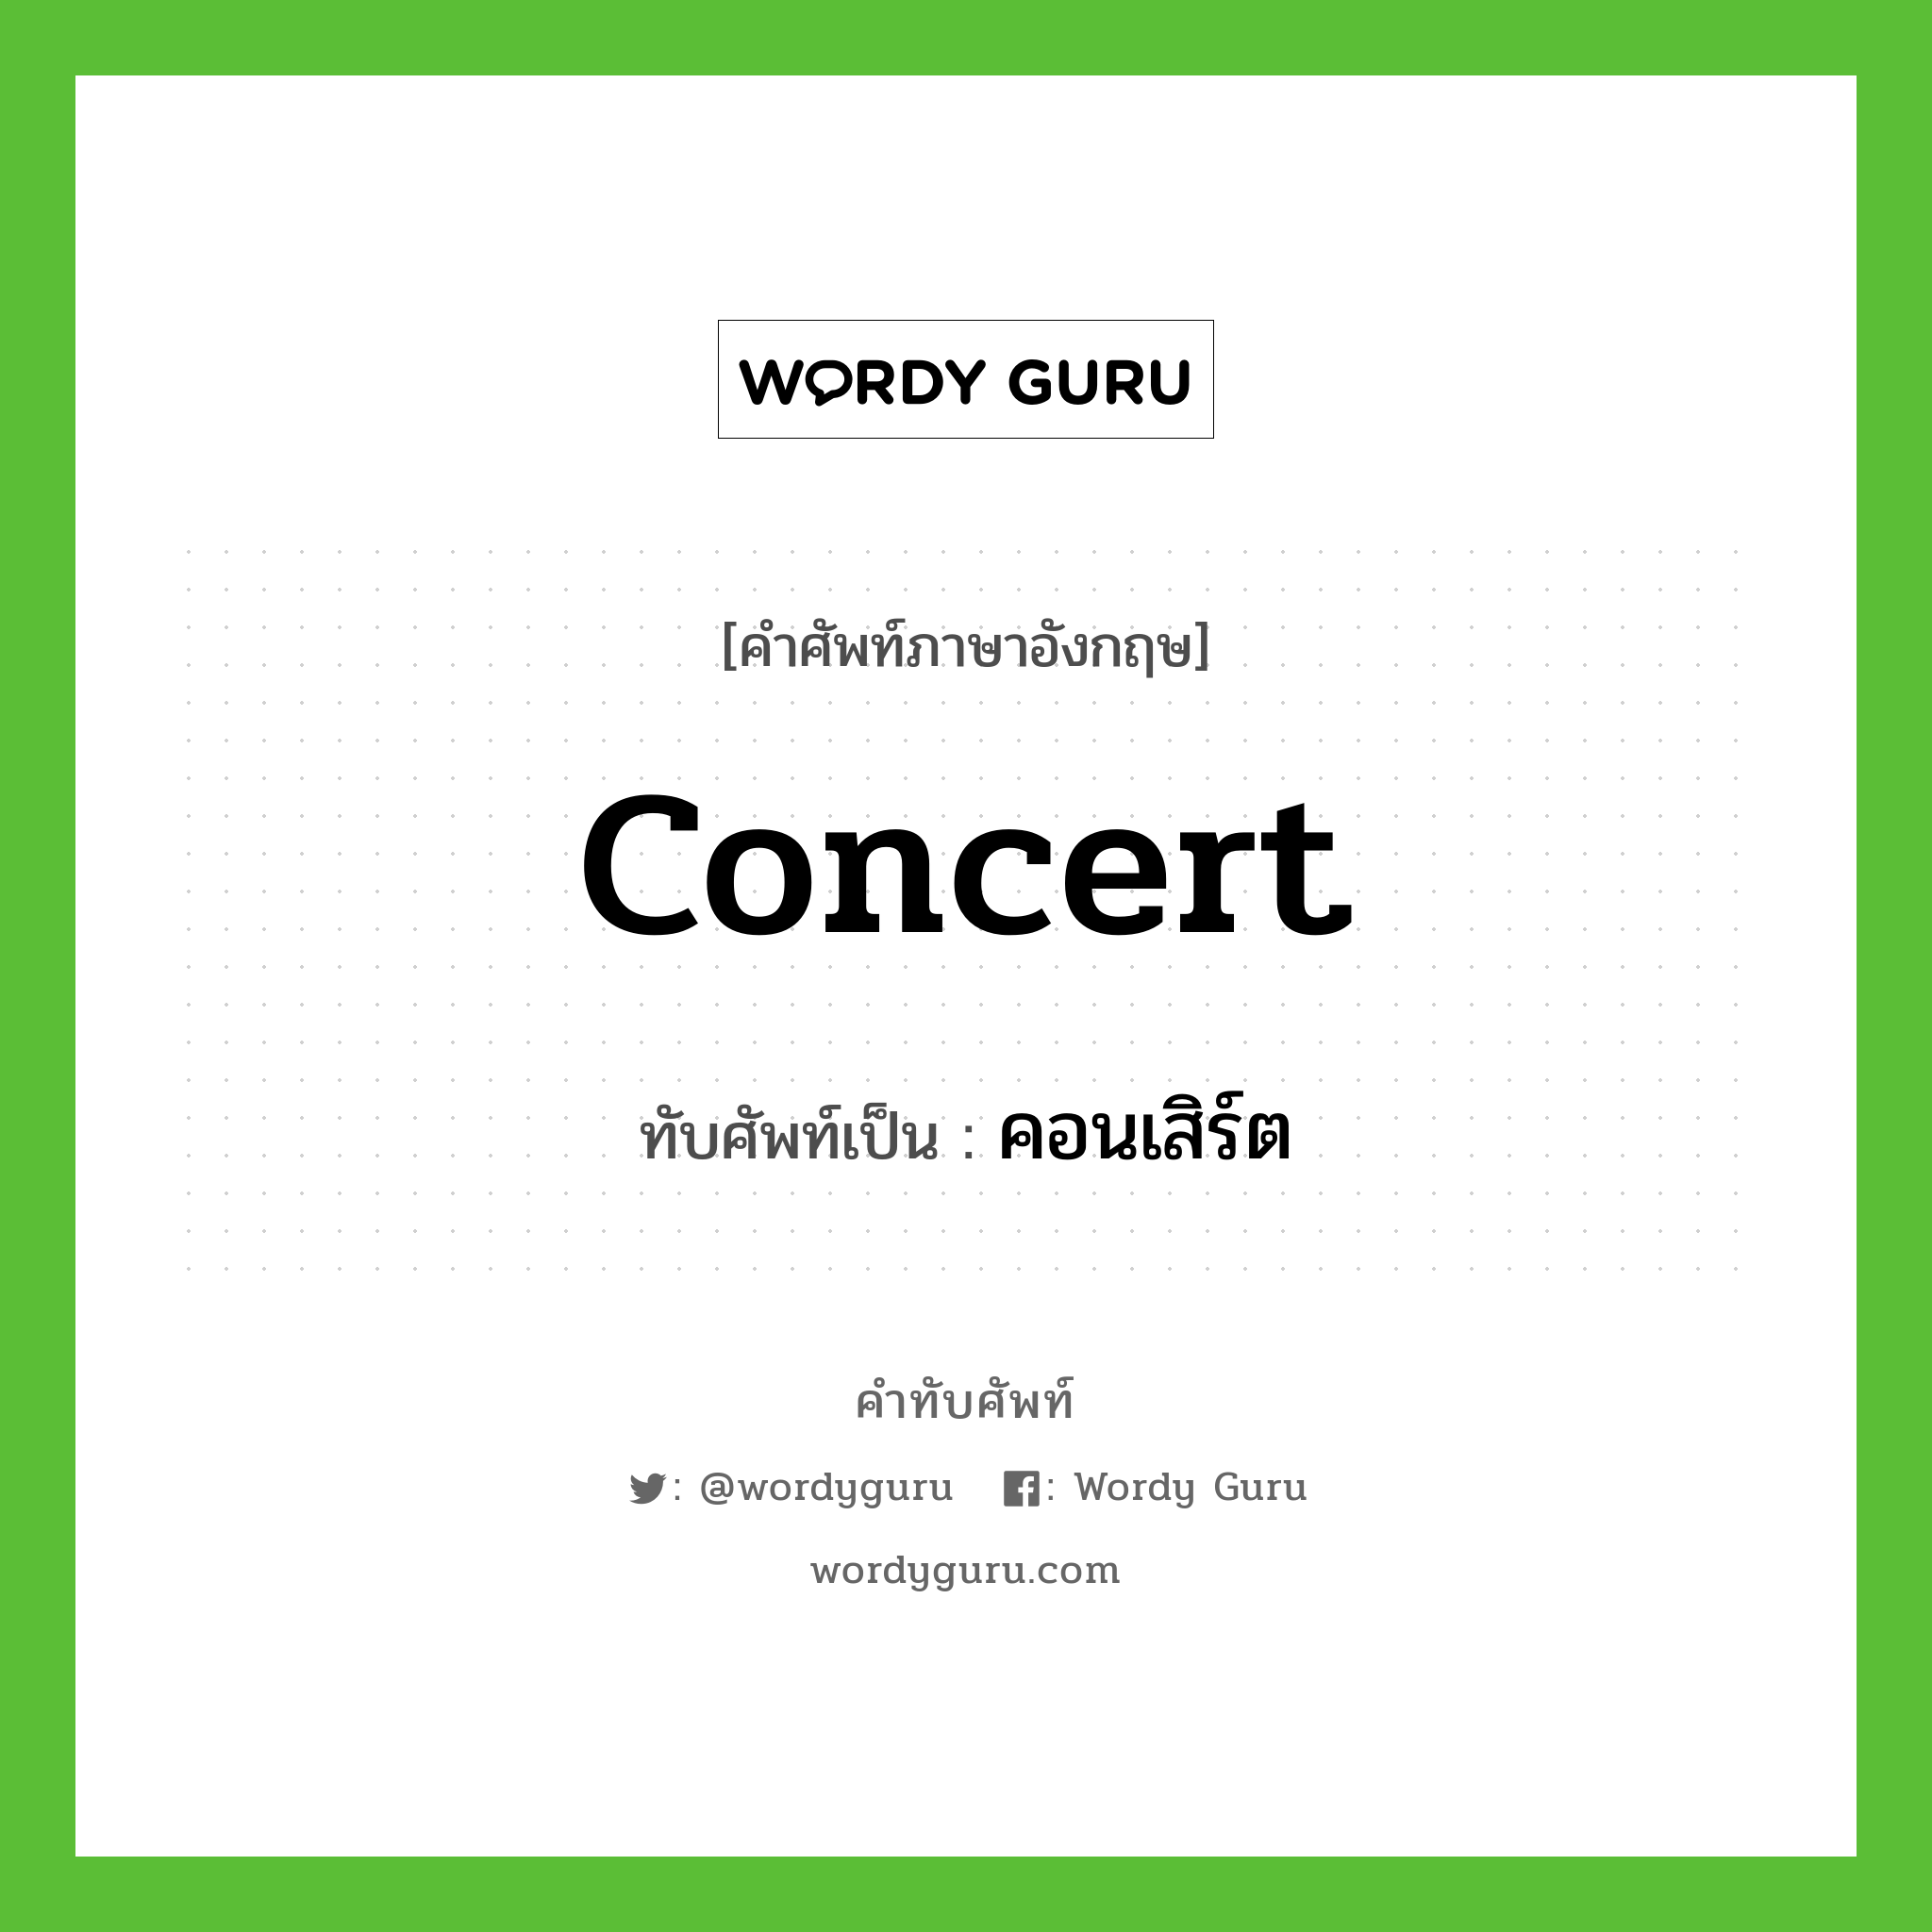 concert เขียนเป็นคำไทยว่าอะไร?, คำศัพท์ภาษาอังกฤษ concert ทับศัพท์เป็น คอนเสิร์ต